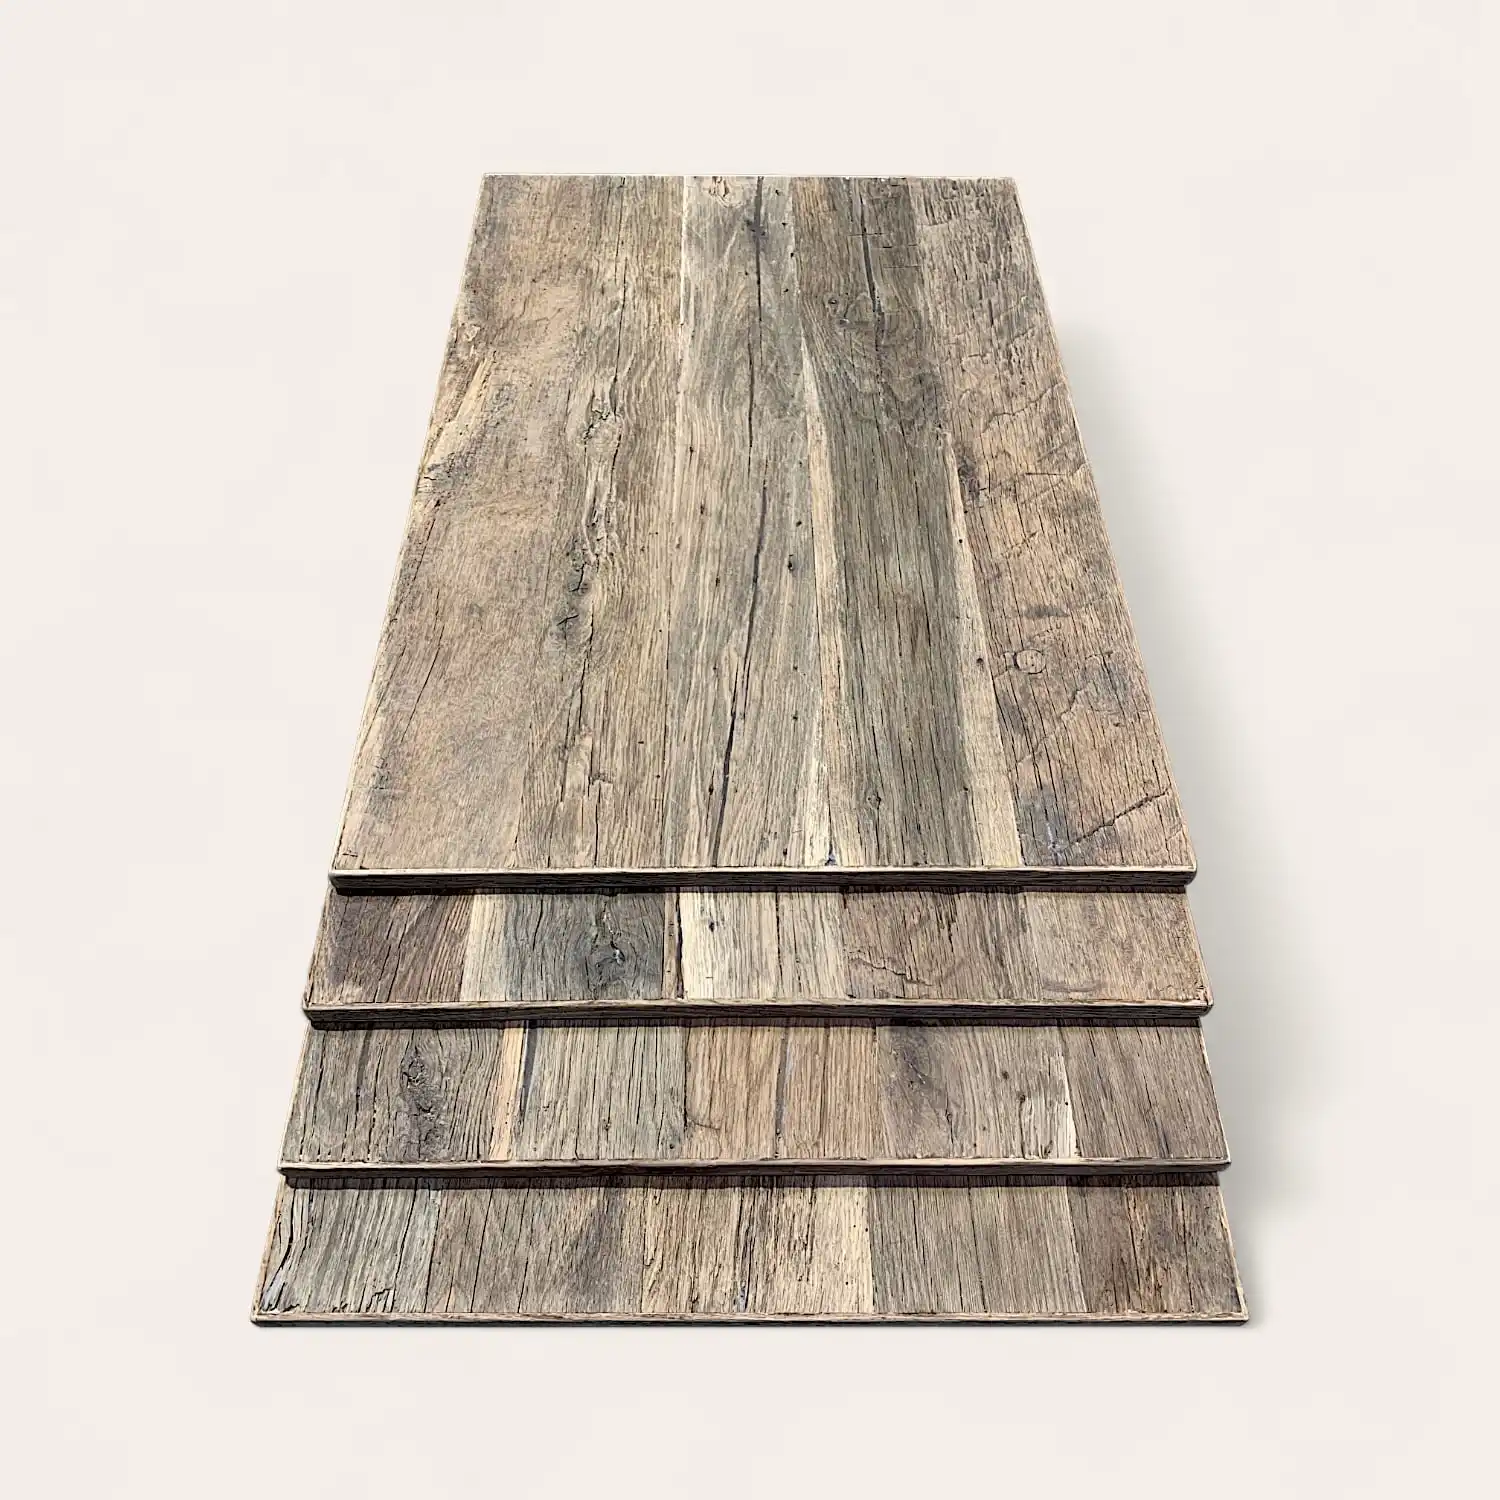  Pile de quatre planches de bois patinées avec des surfaces texturées, disposées de manière superposée sur un fond clair. 